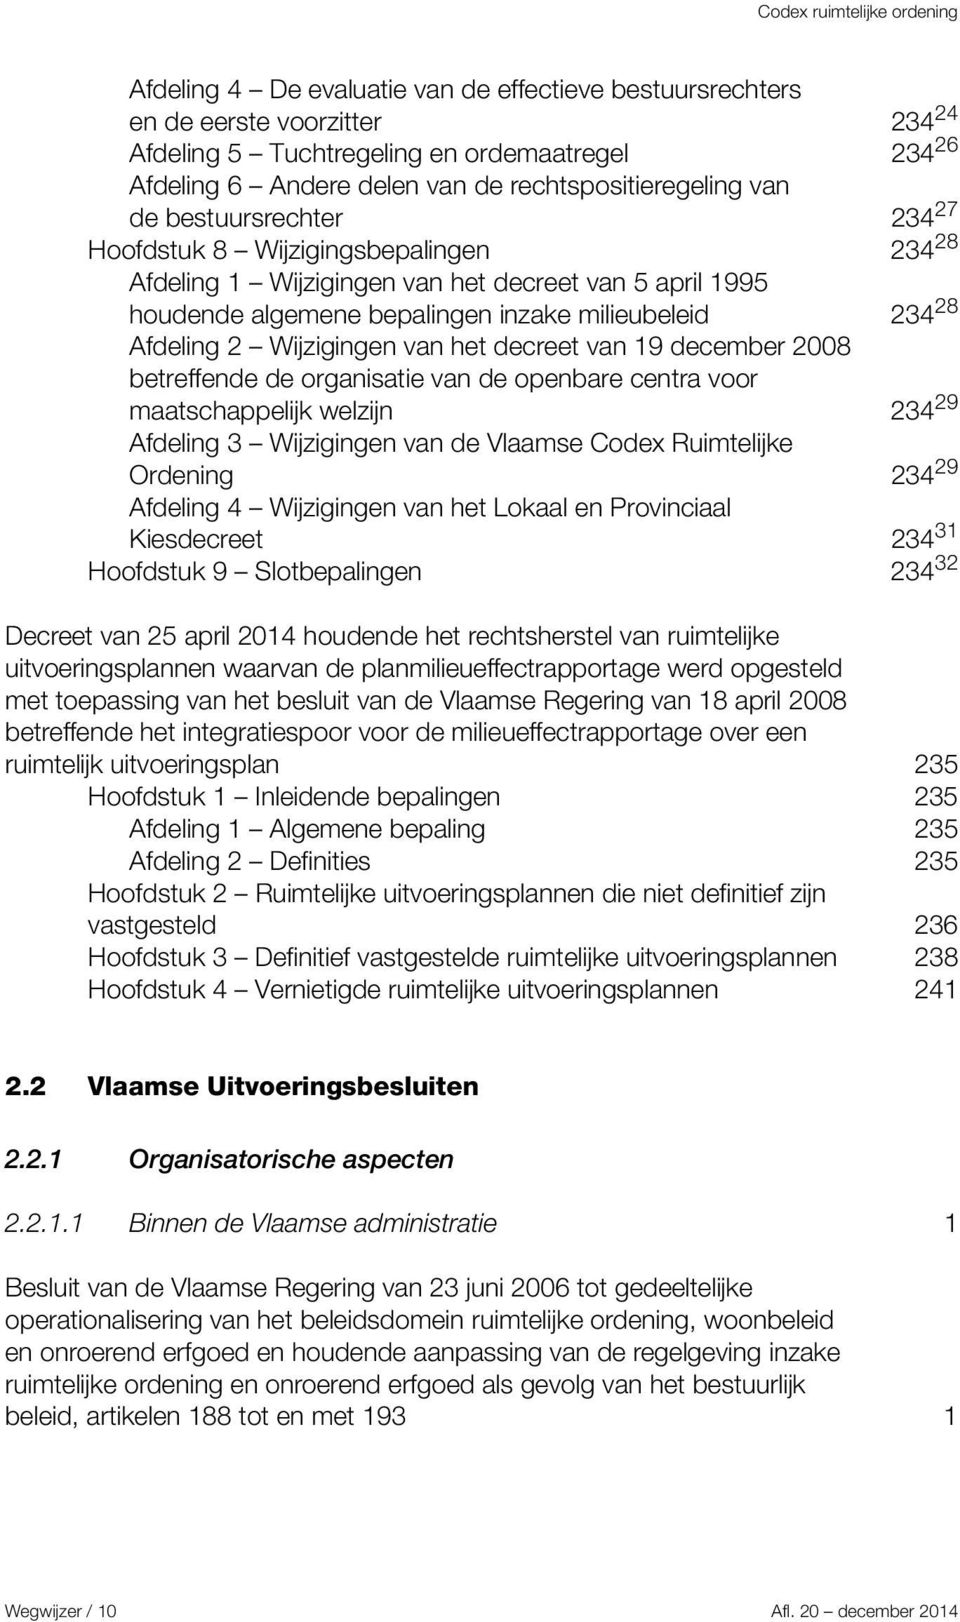 van het decreet van 19 december 2008 betreffende de organisatie van de openbare centra voor maatschappelijk welzijn 234 29 Afdeling 3 Wijzigingen van de Vlaamse Codex Ruimtelijke Ordening 234 29